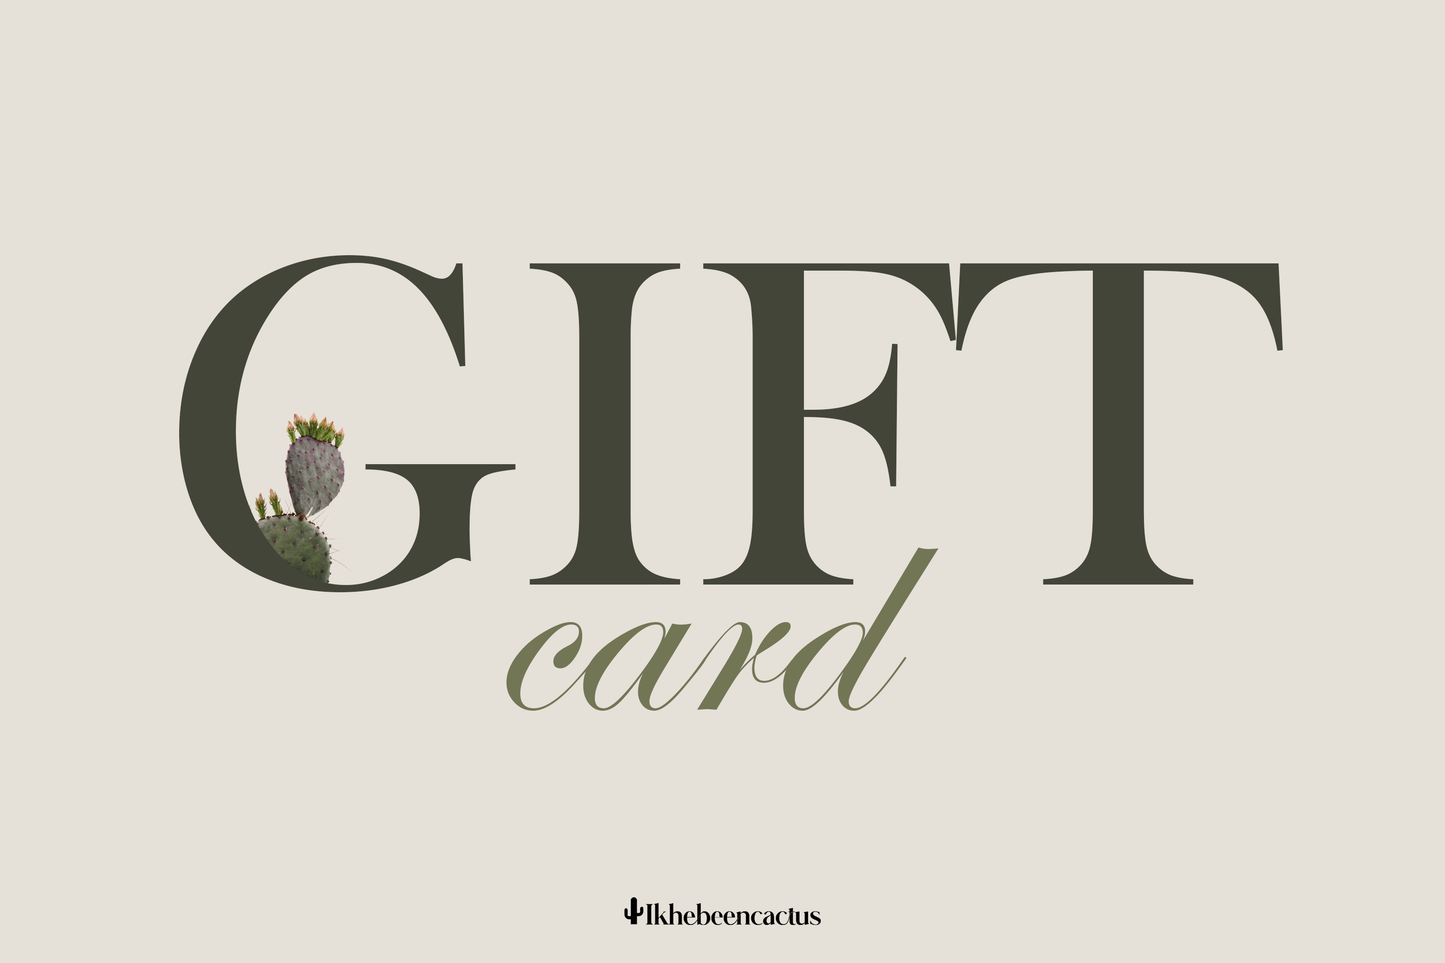 The Ikhebeencactus gift card